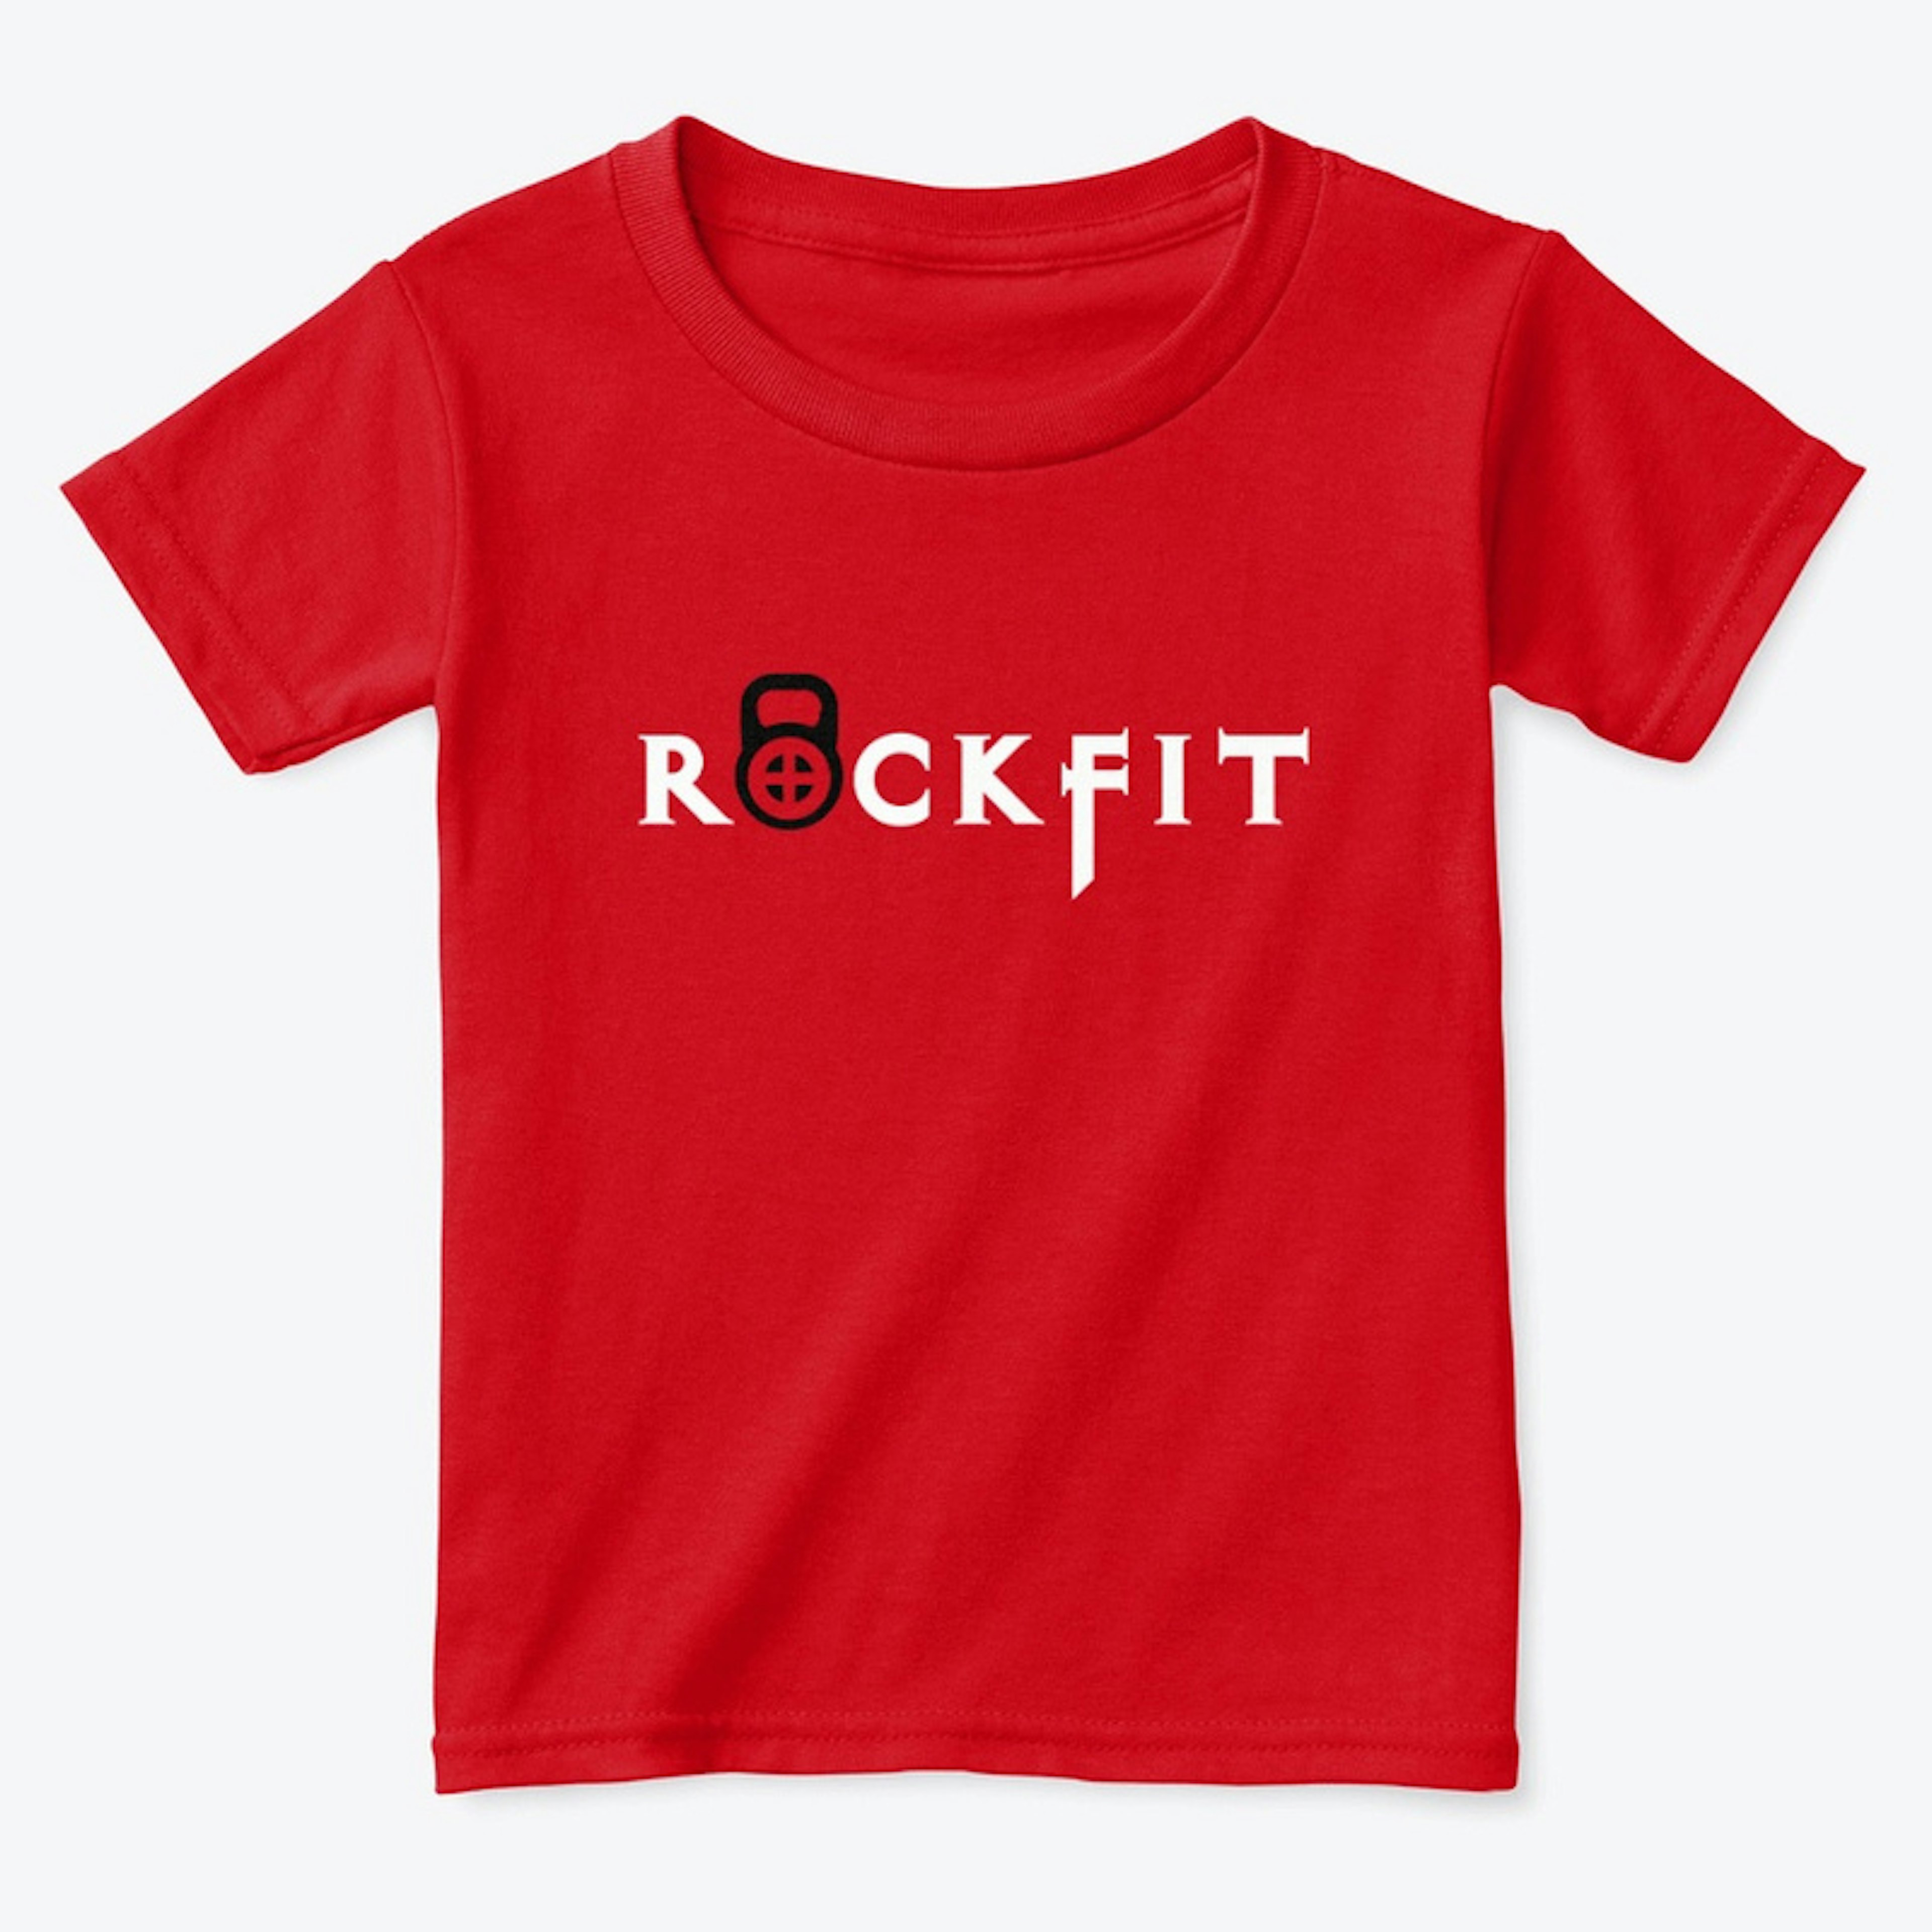 Rockfit Toddler Red Shirt